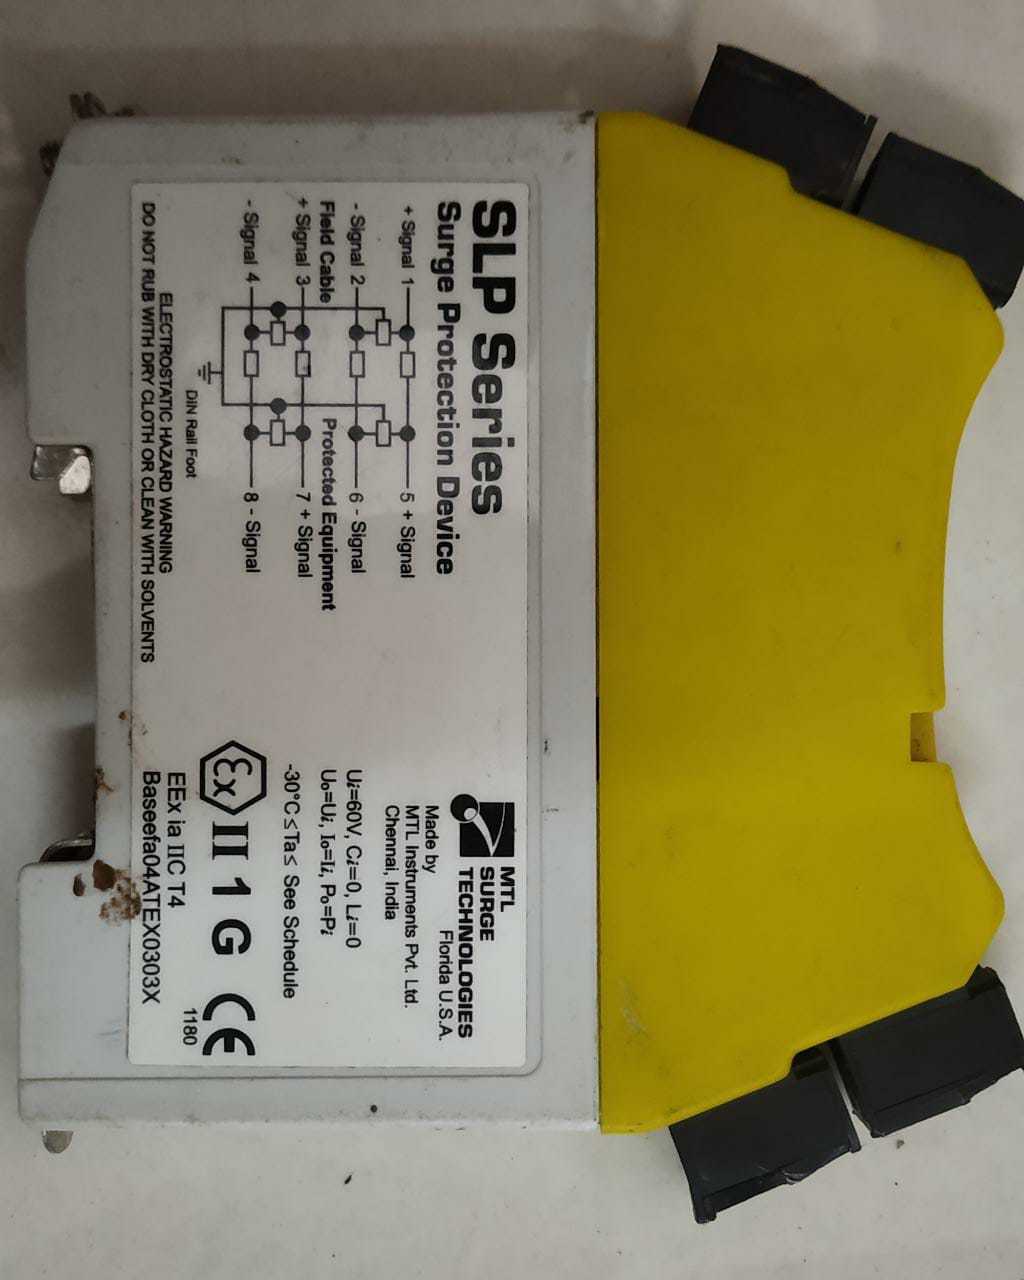 Slp Series Surge Protection Device Eex Ia Iic T4